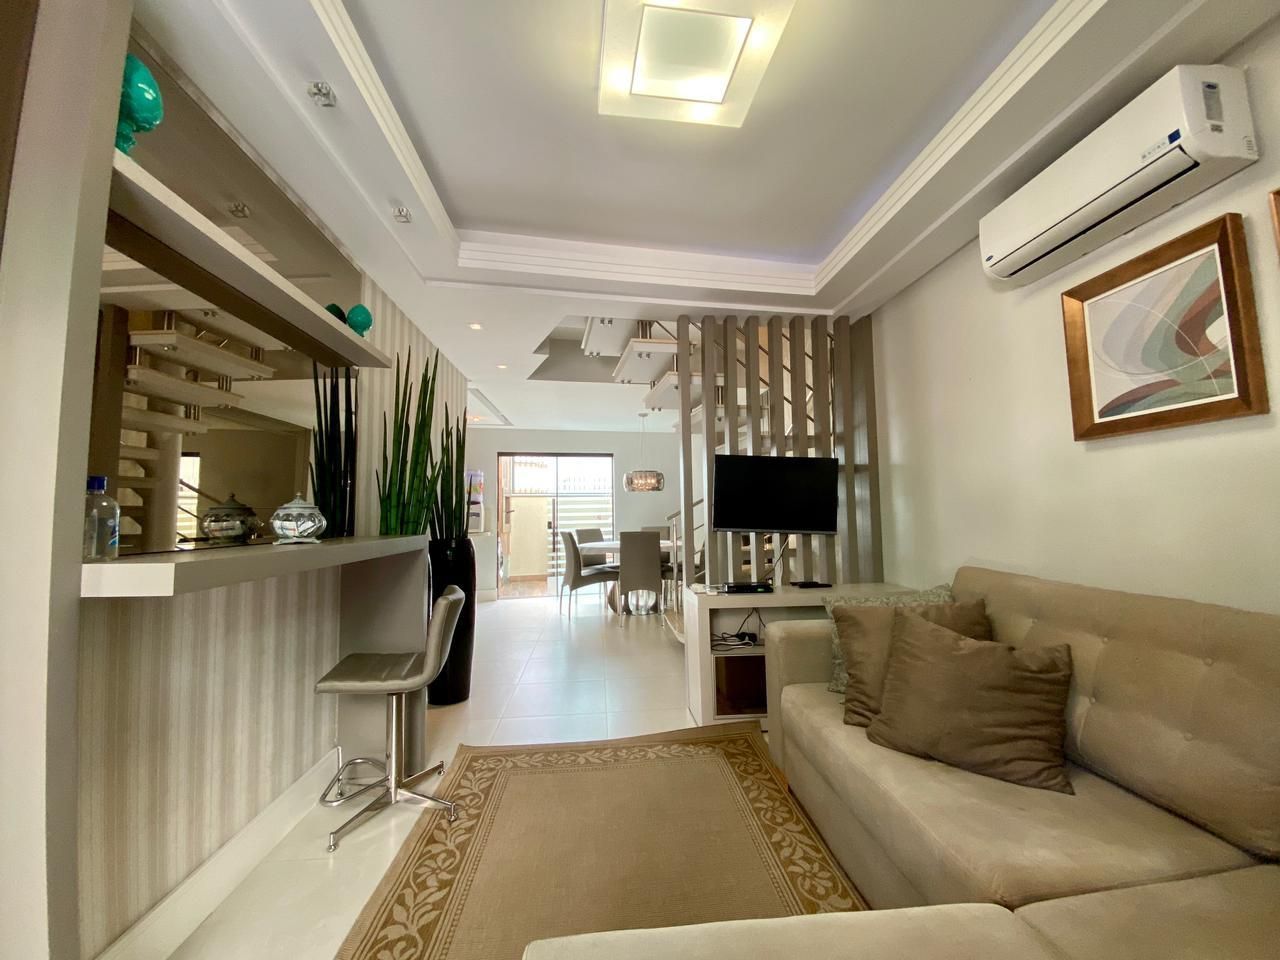 Apartamento com 3 Dormitórios para alugar, 95 m² por R$ 300,00